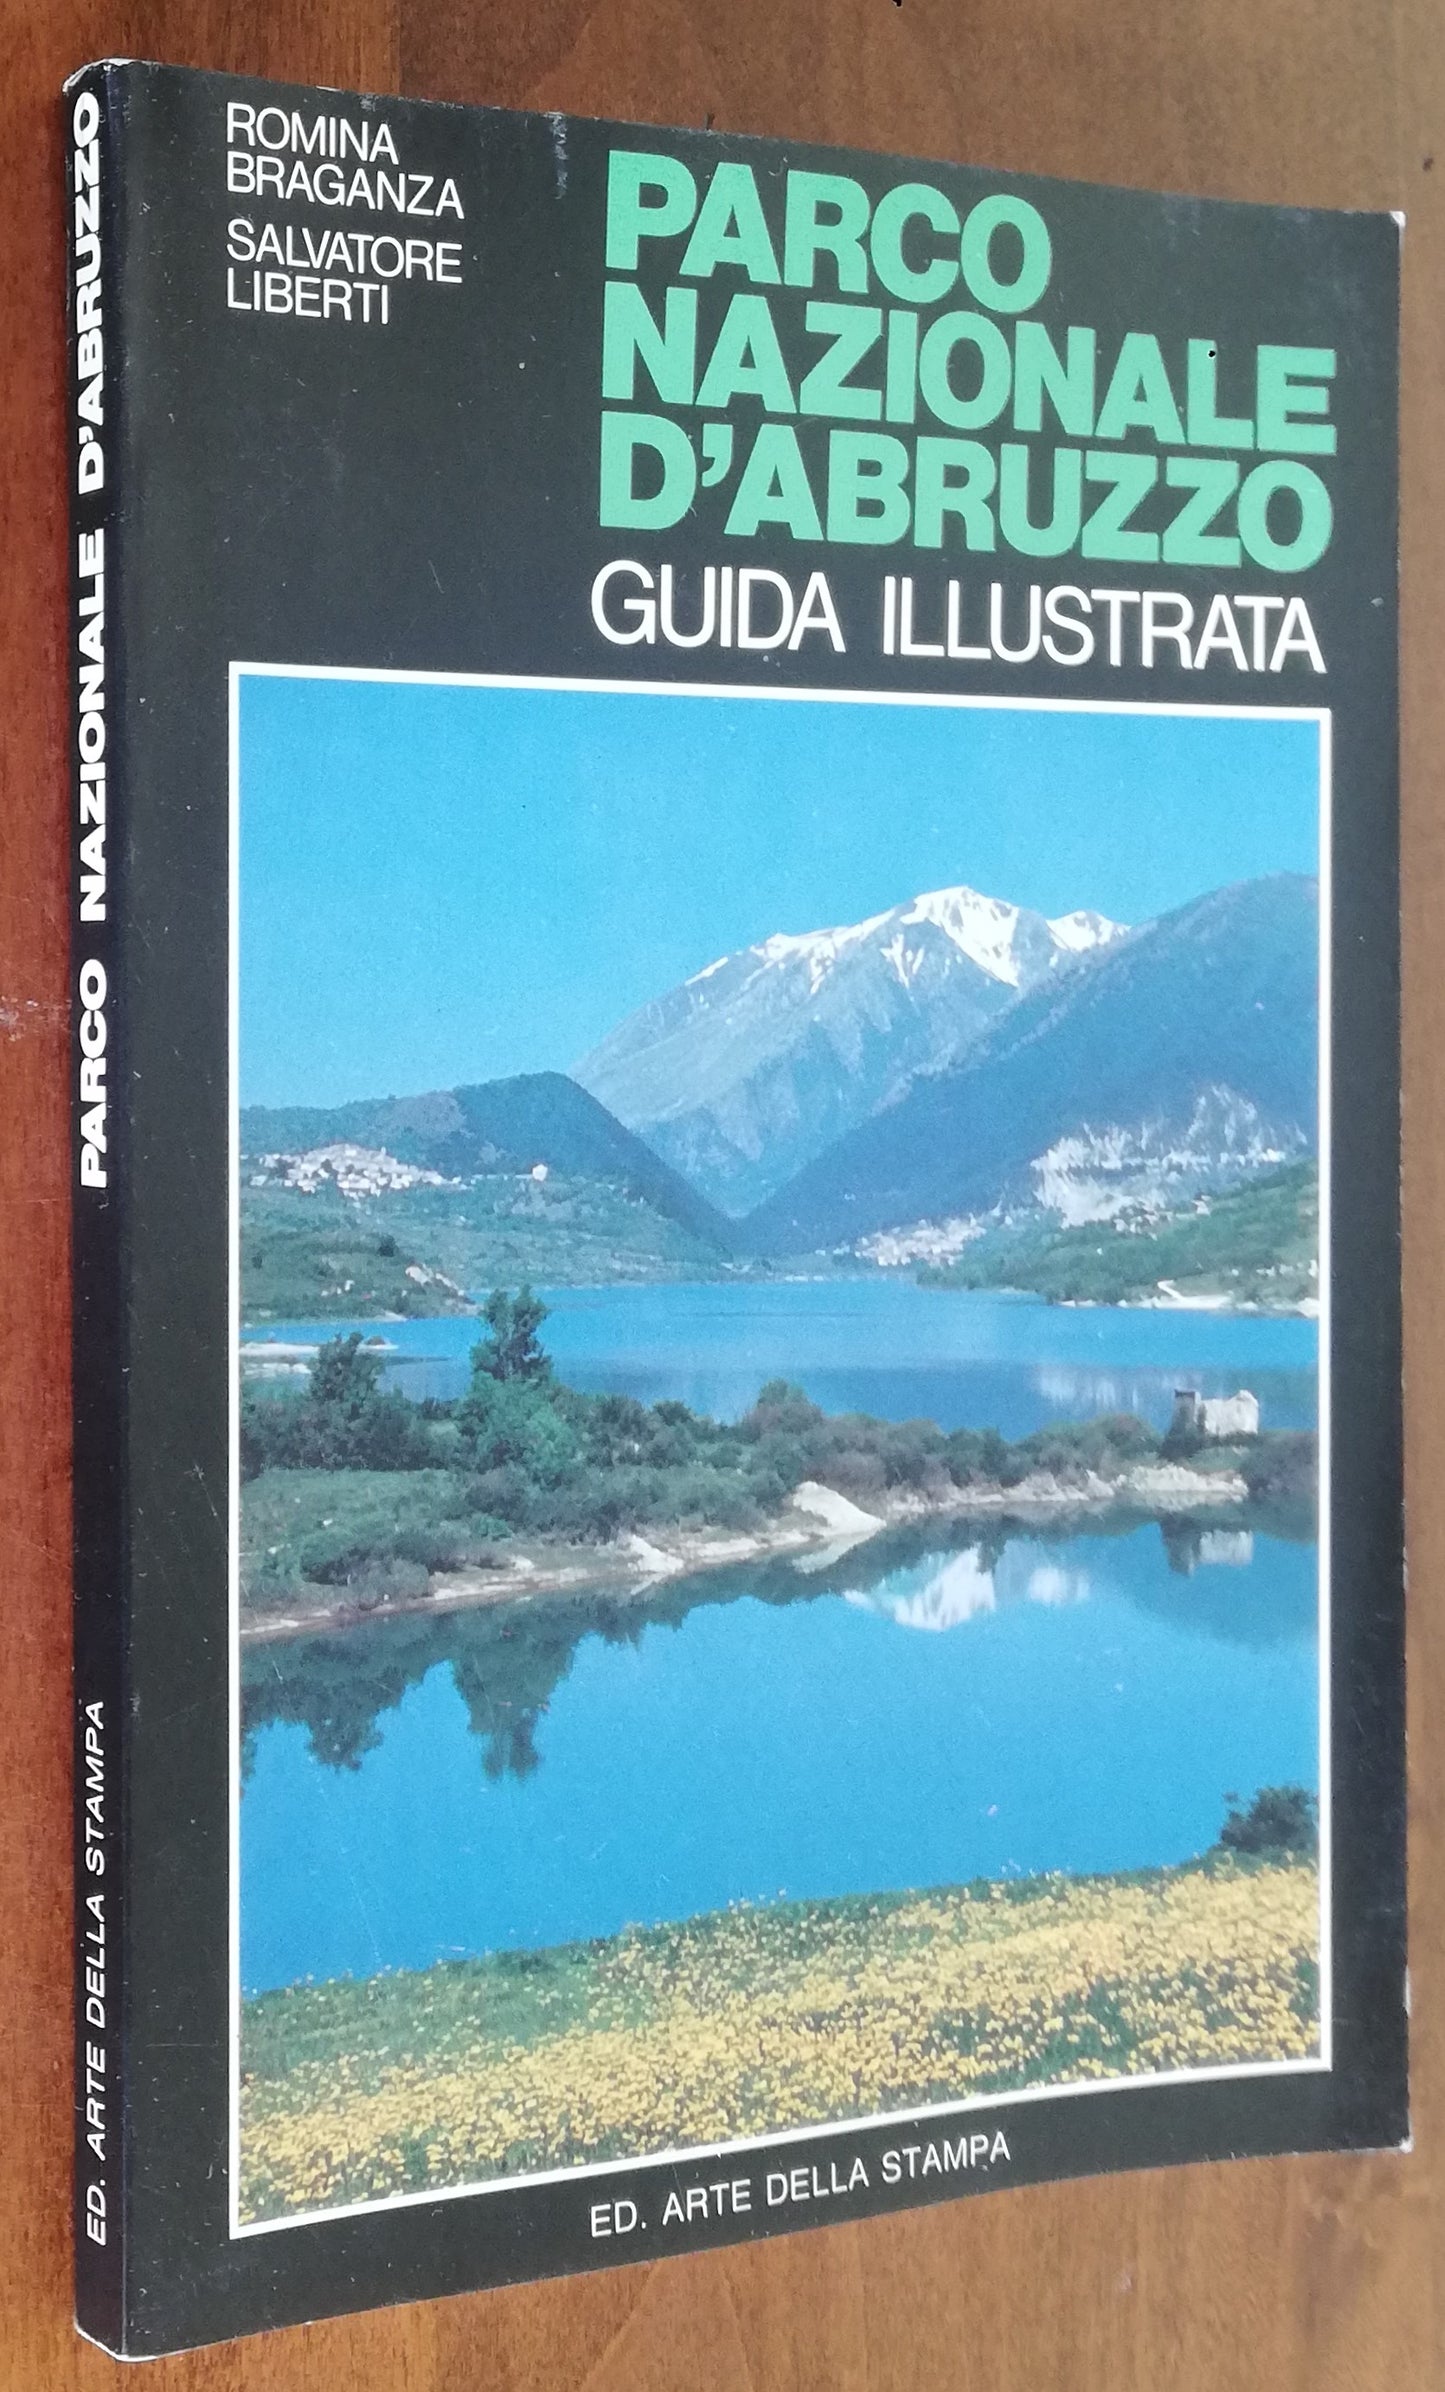 Parco Nazionale d’Abruzzo. Guida illustrata